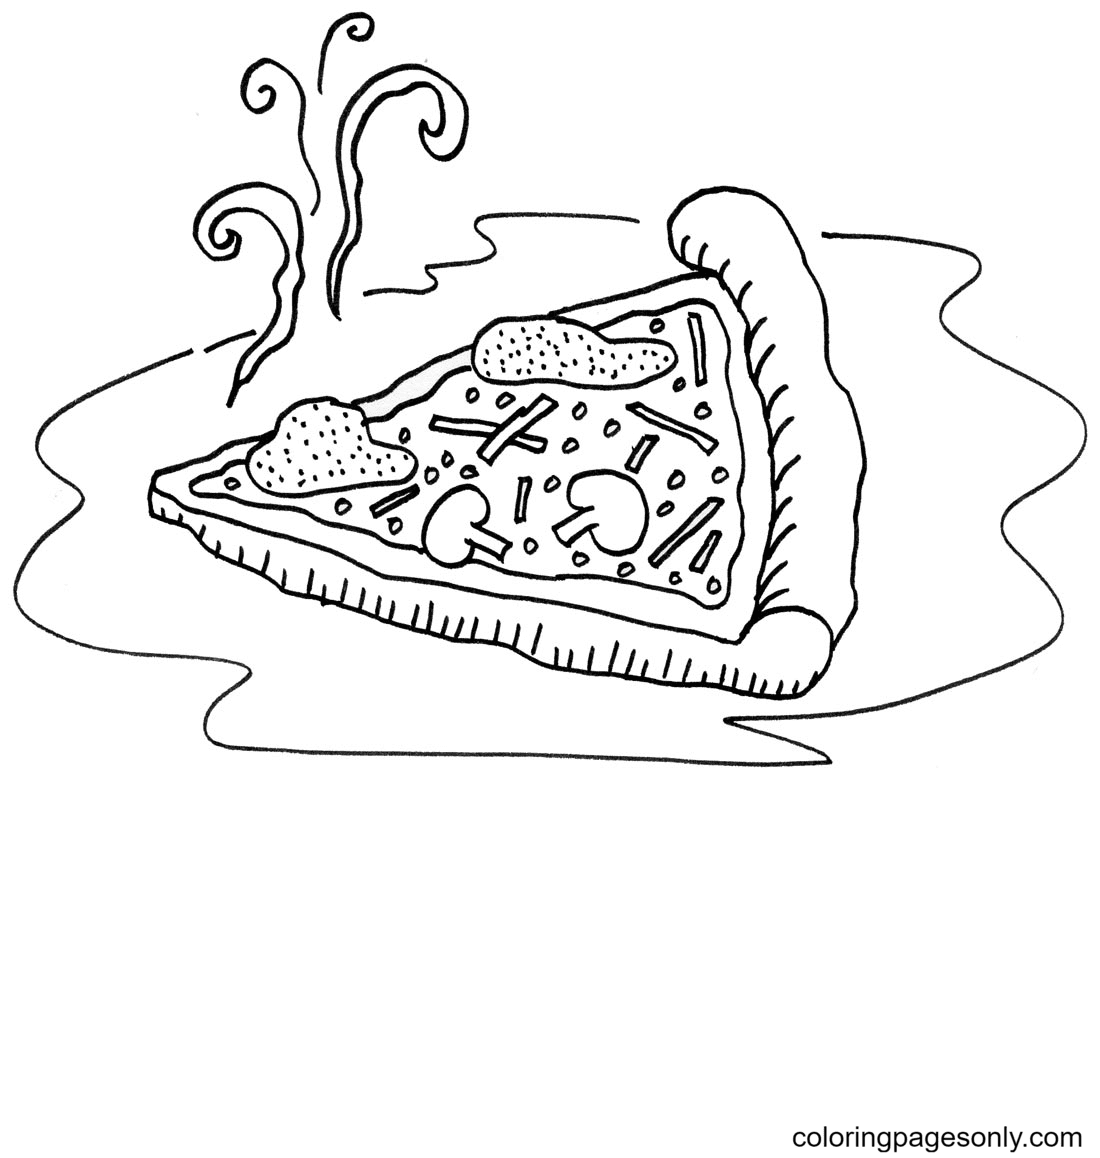 Una pagina da colorare di fette di pizza appena sfornate